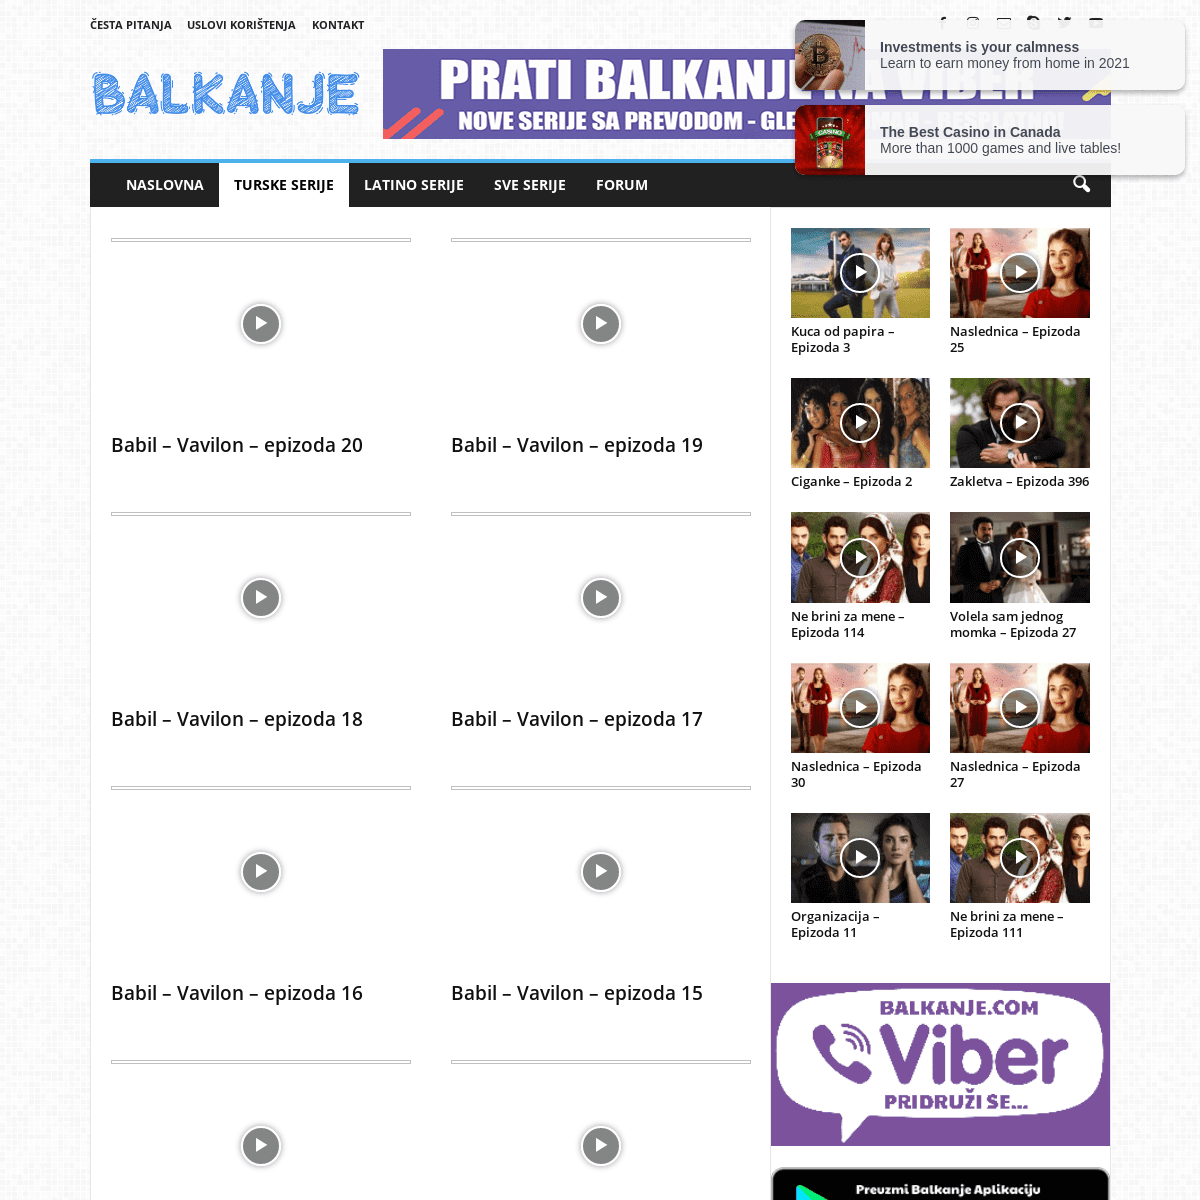 A complete backup of https://balkanje.com/turske-serije/babil-vavilon-2020/